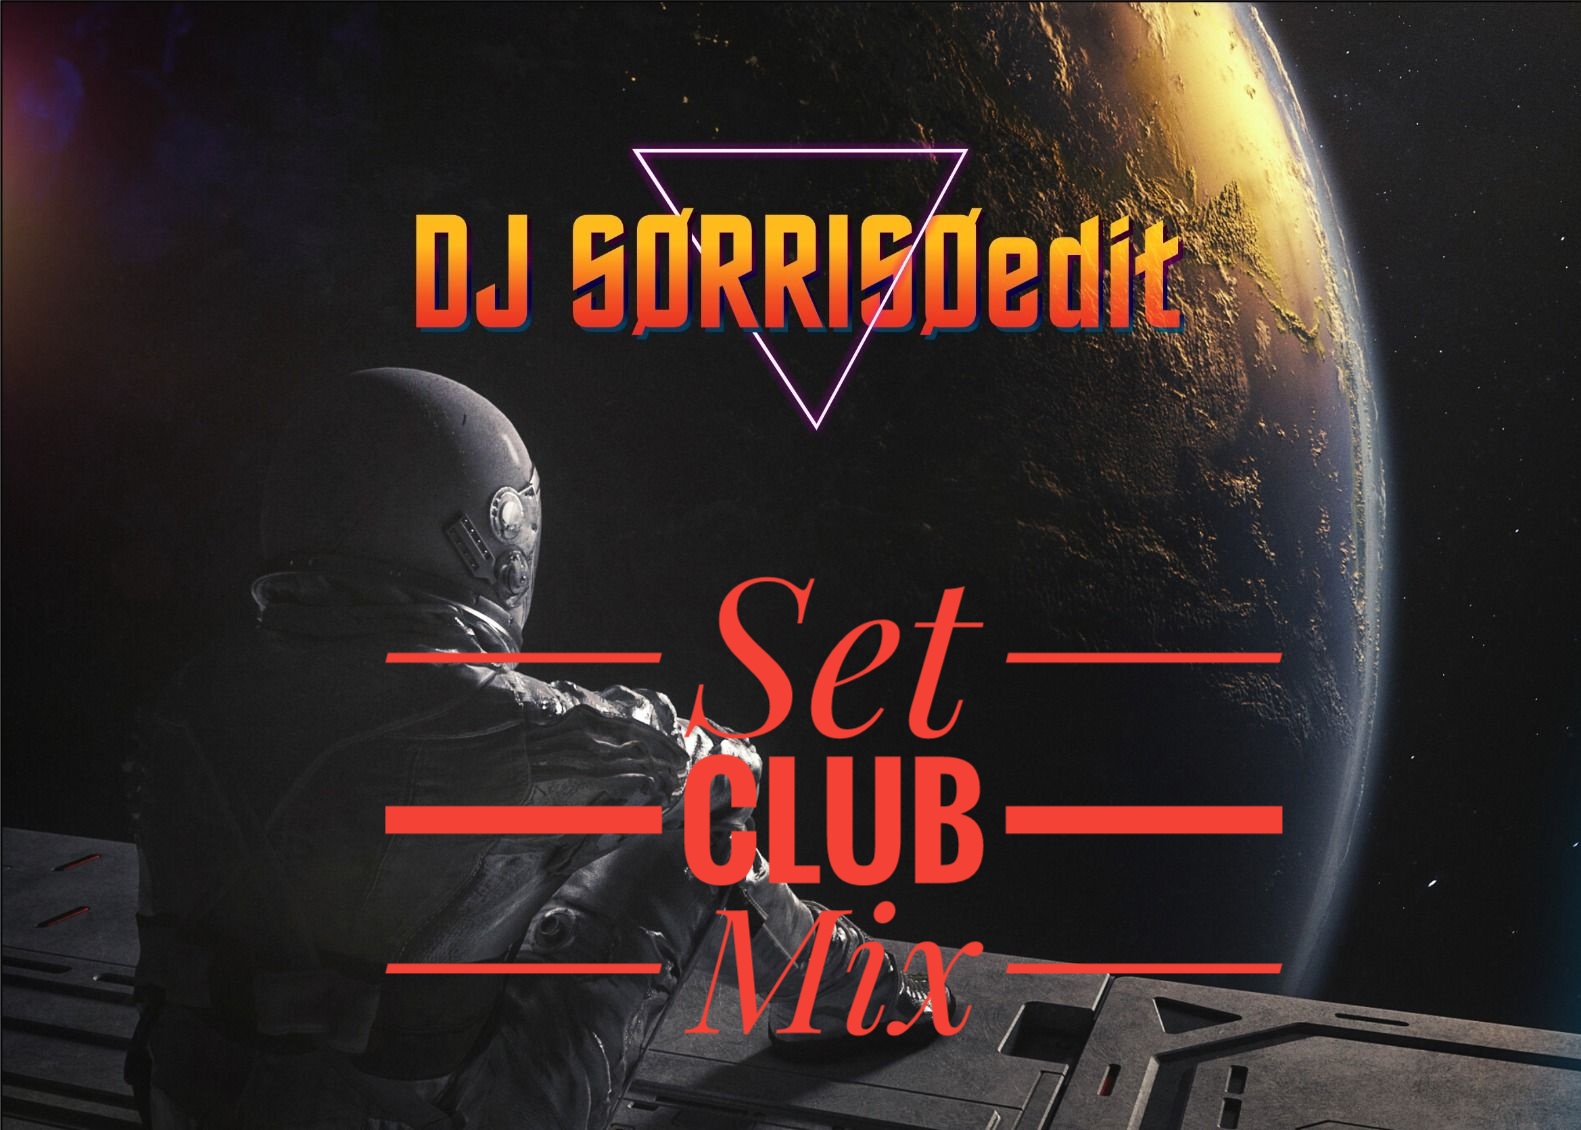 DJ SØRRISØedit set club mix